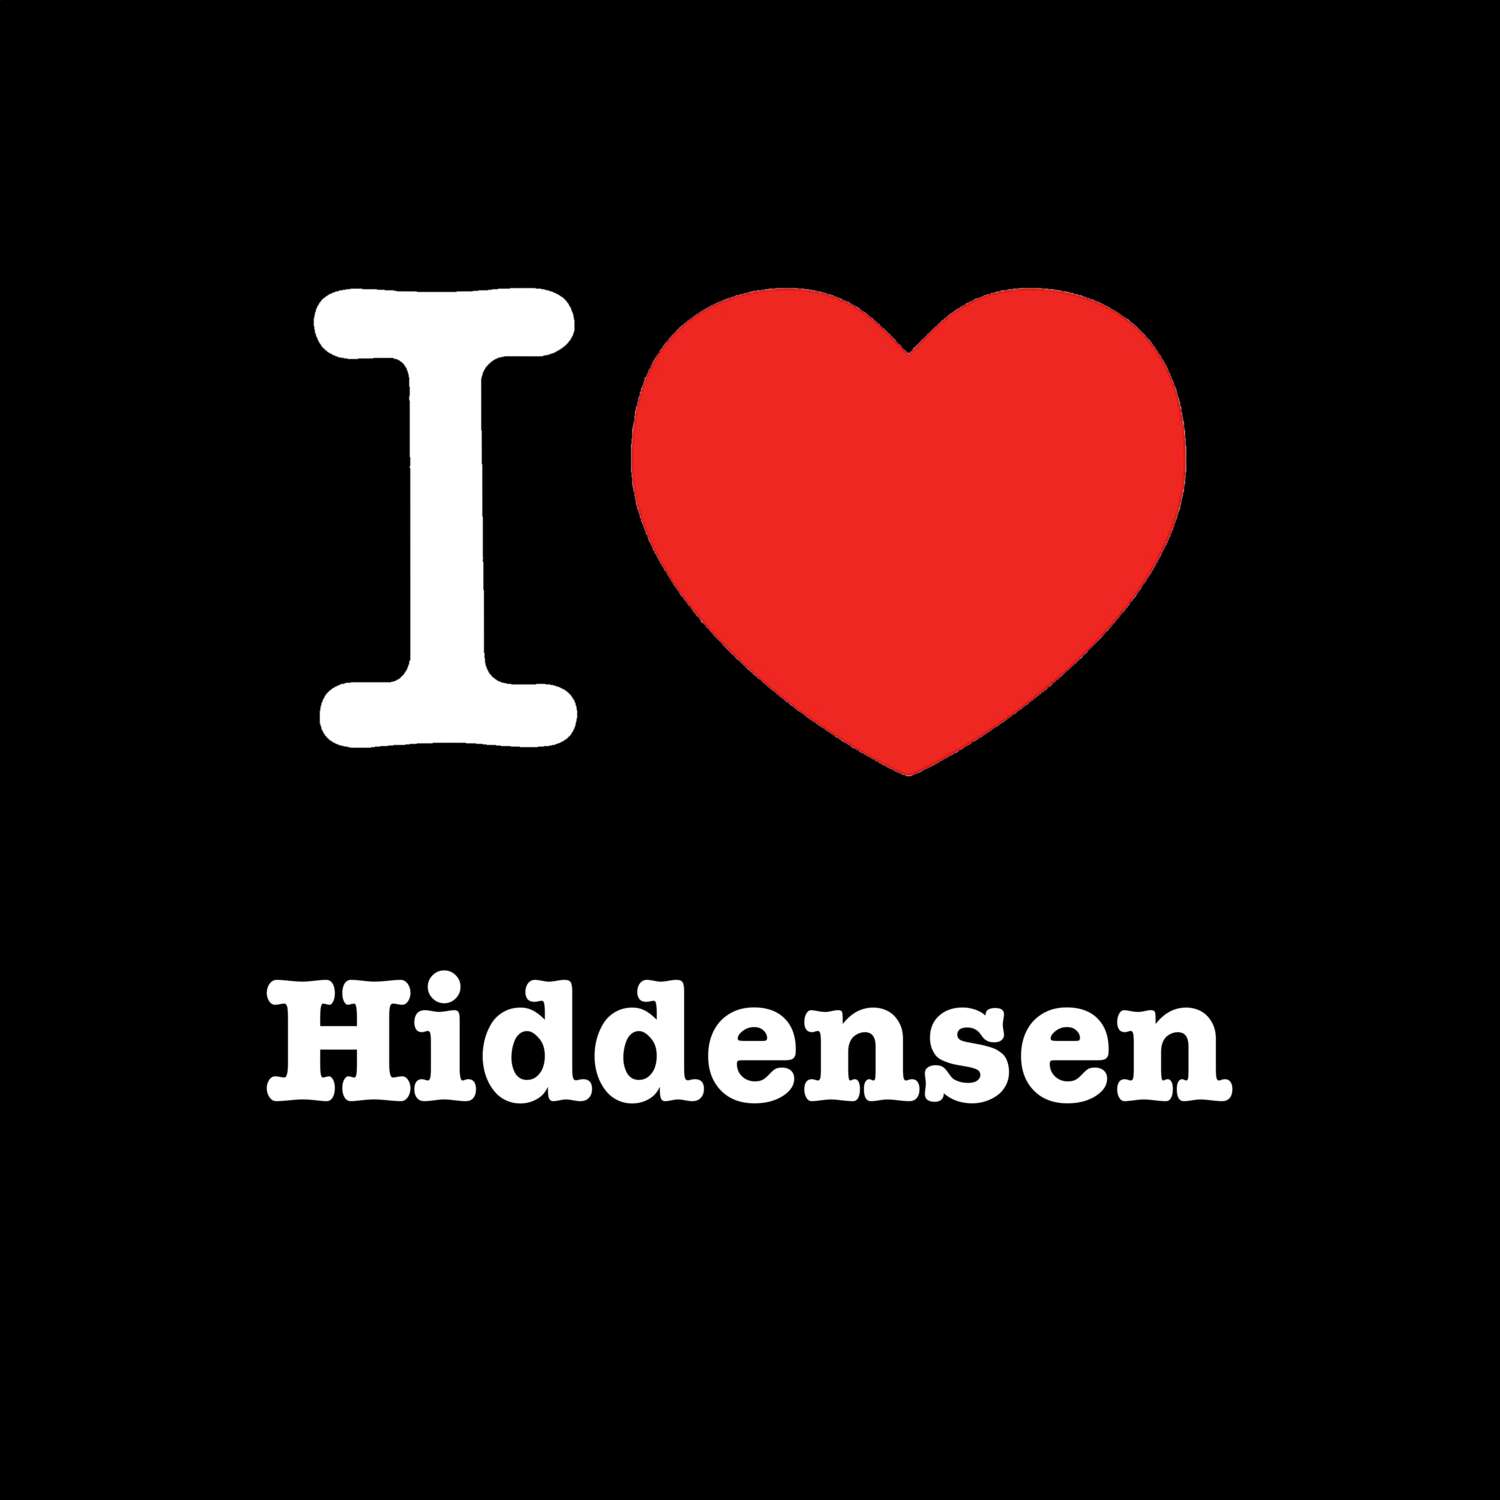 Hiddensen T-Shirt »I love«